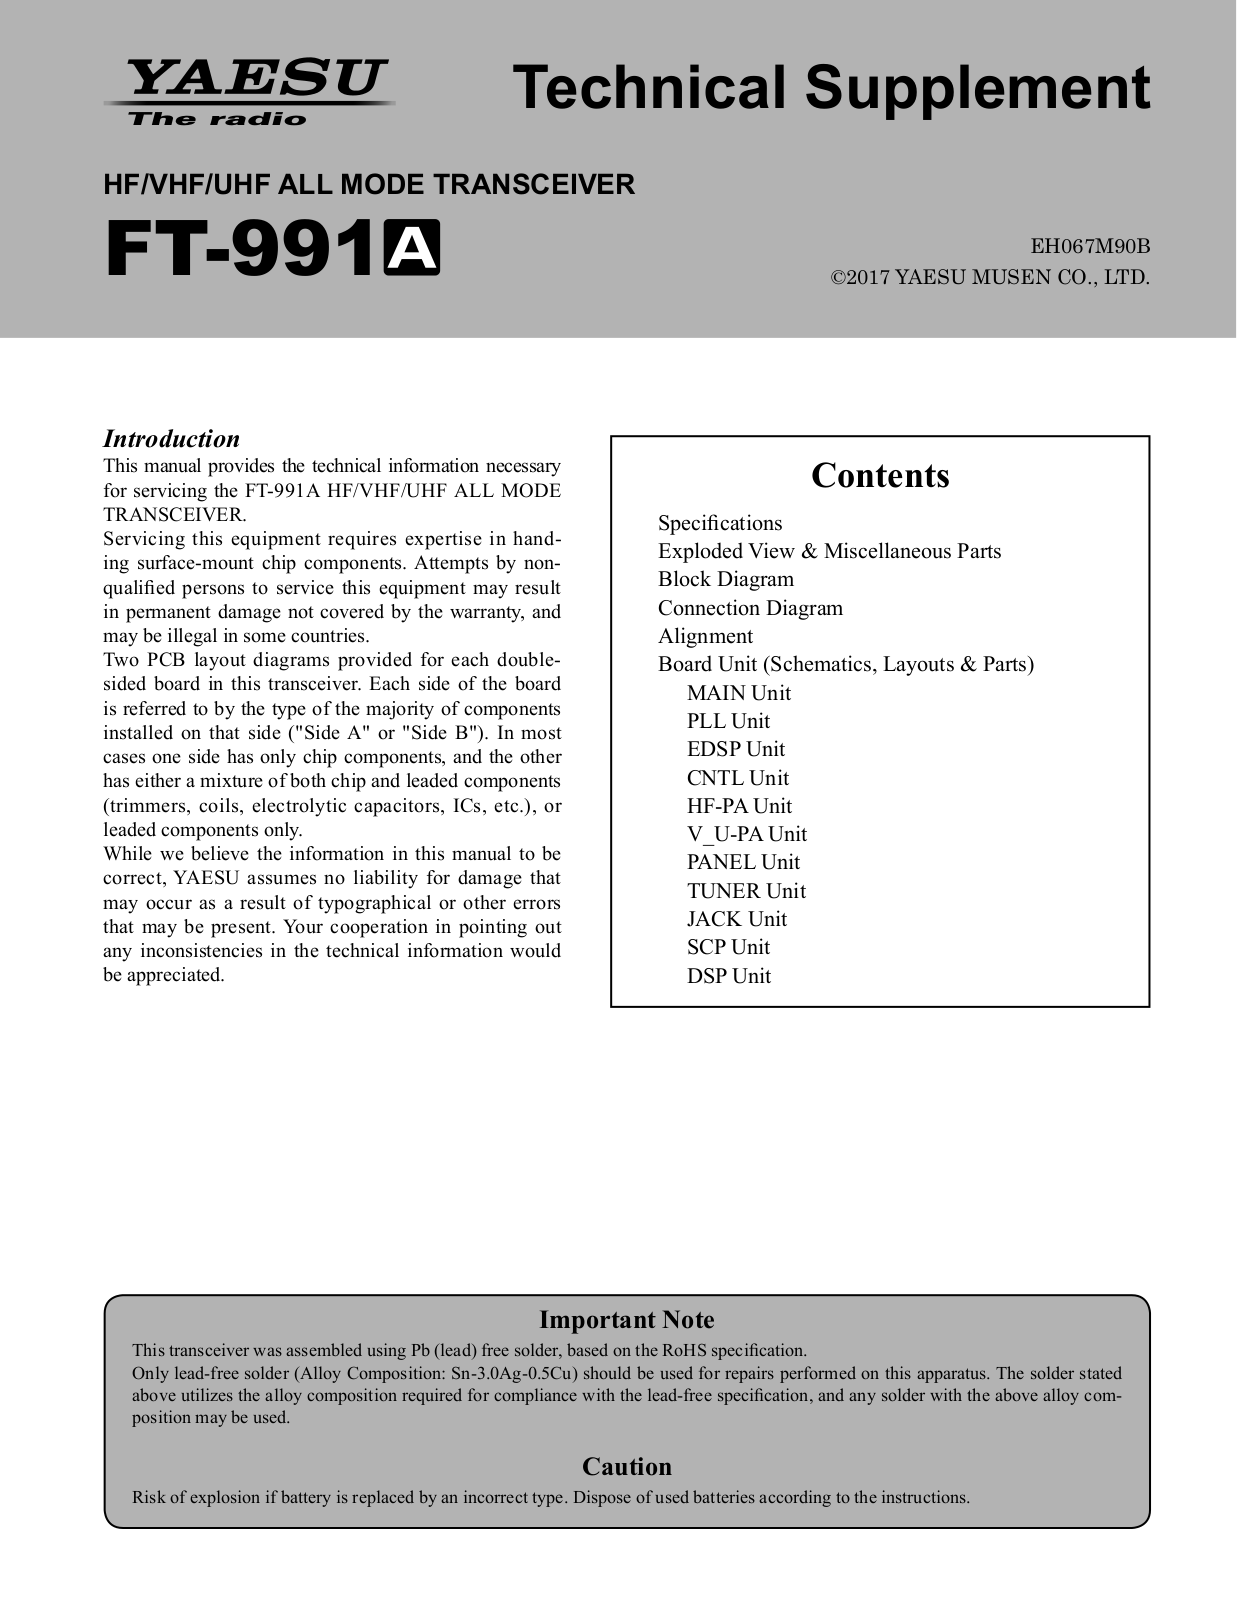 Yaesu FT-991A Service Manual